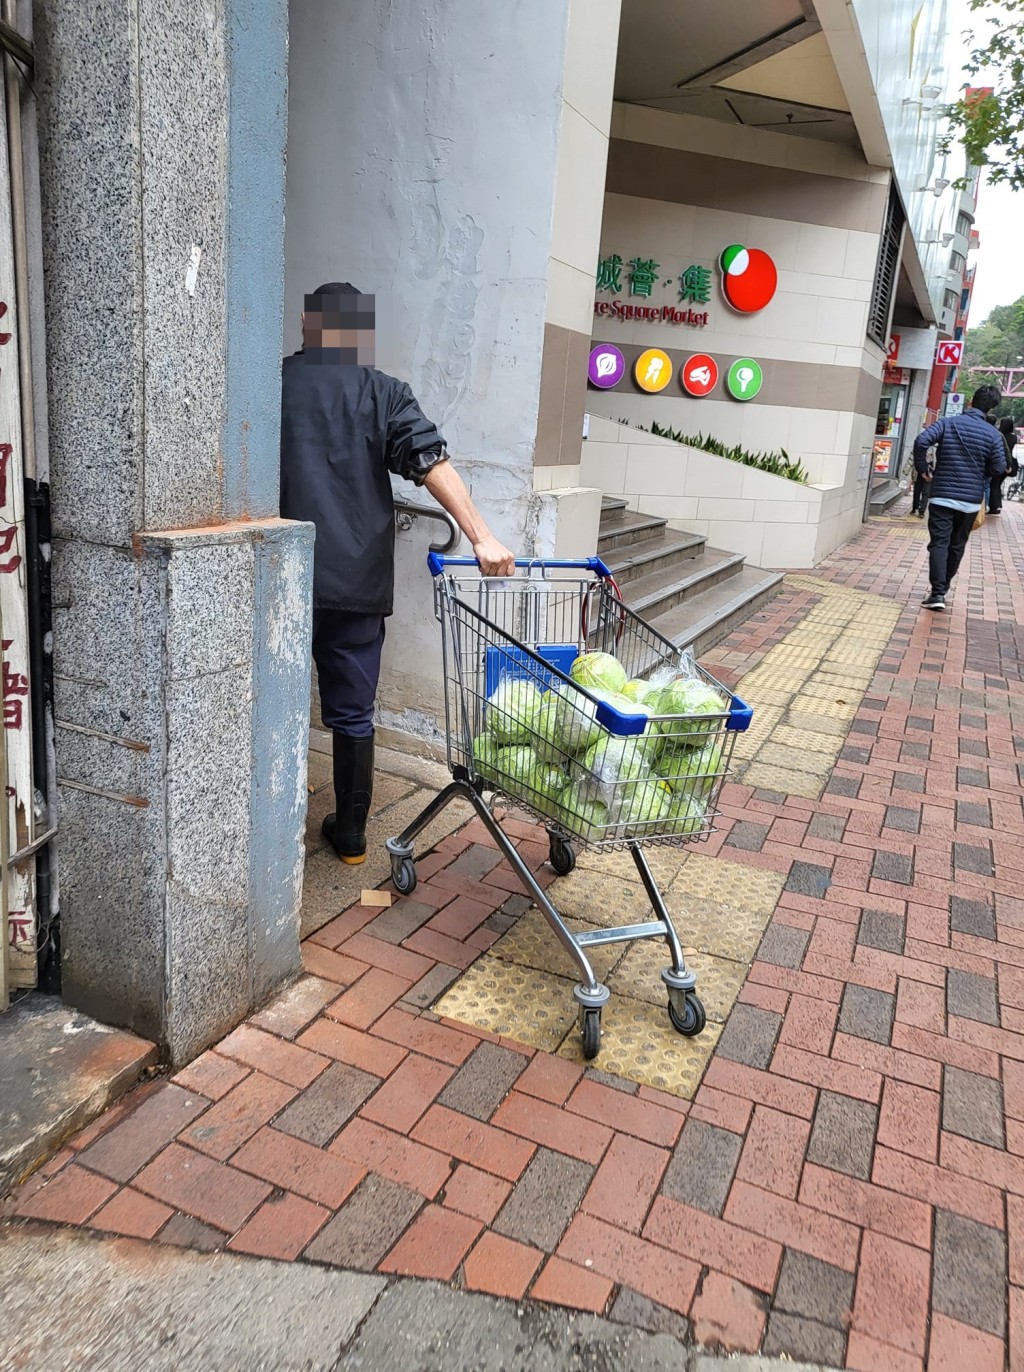 有網民指有菜販涉嫌哄搶倒賣蔬菜。圖片轉載自「麗城花園之友」